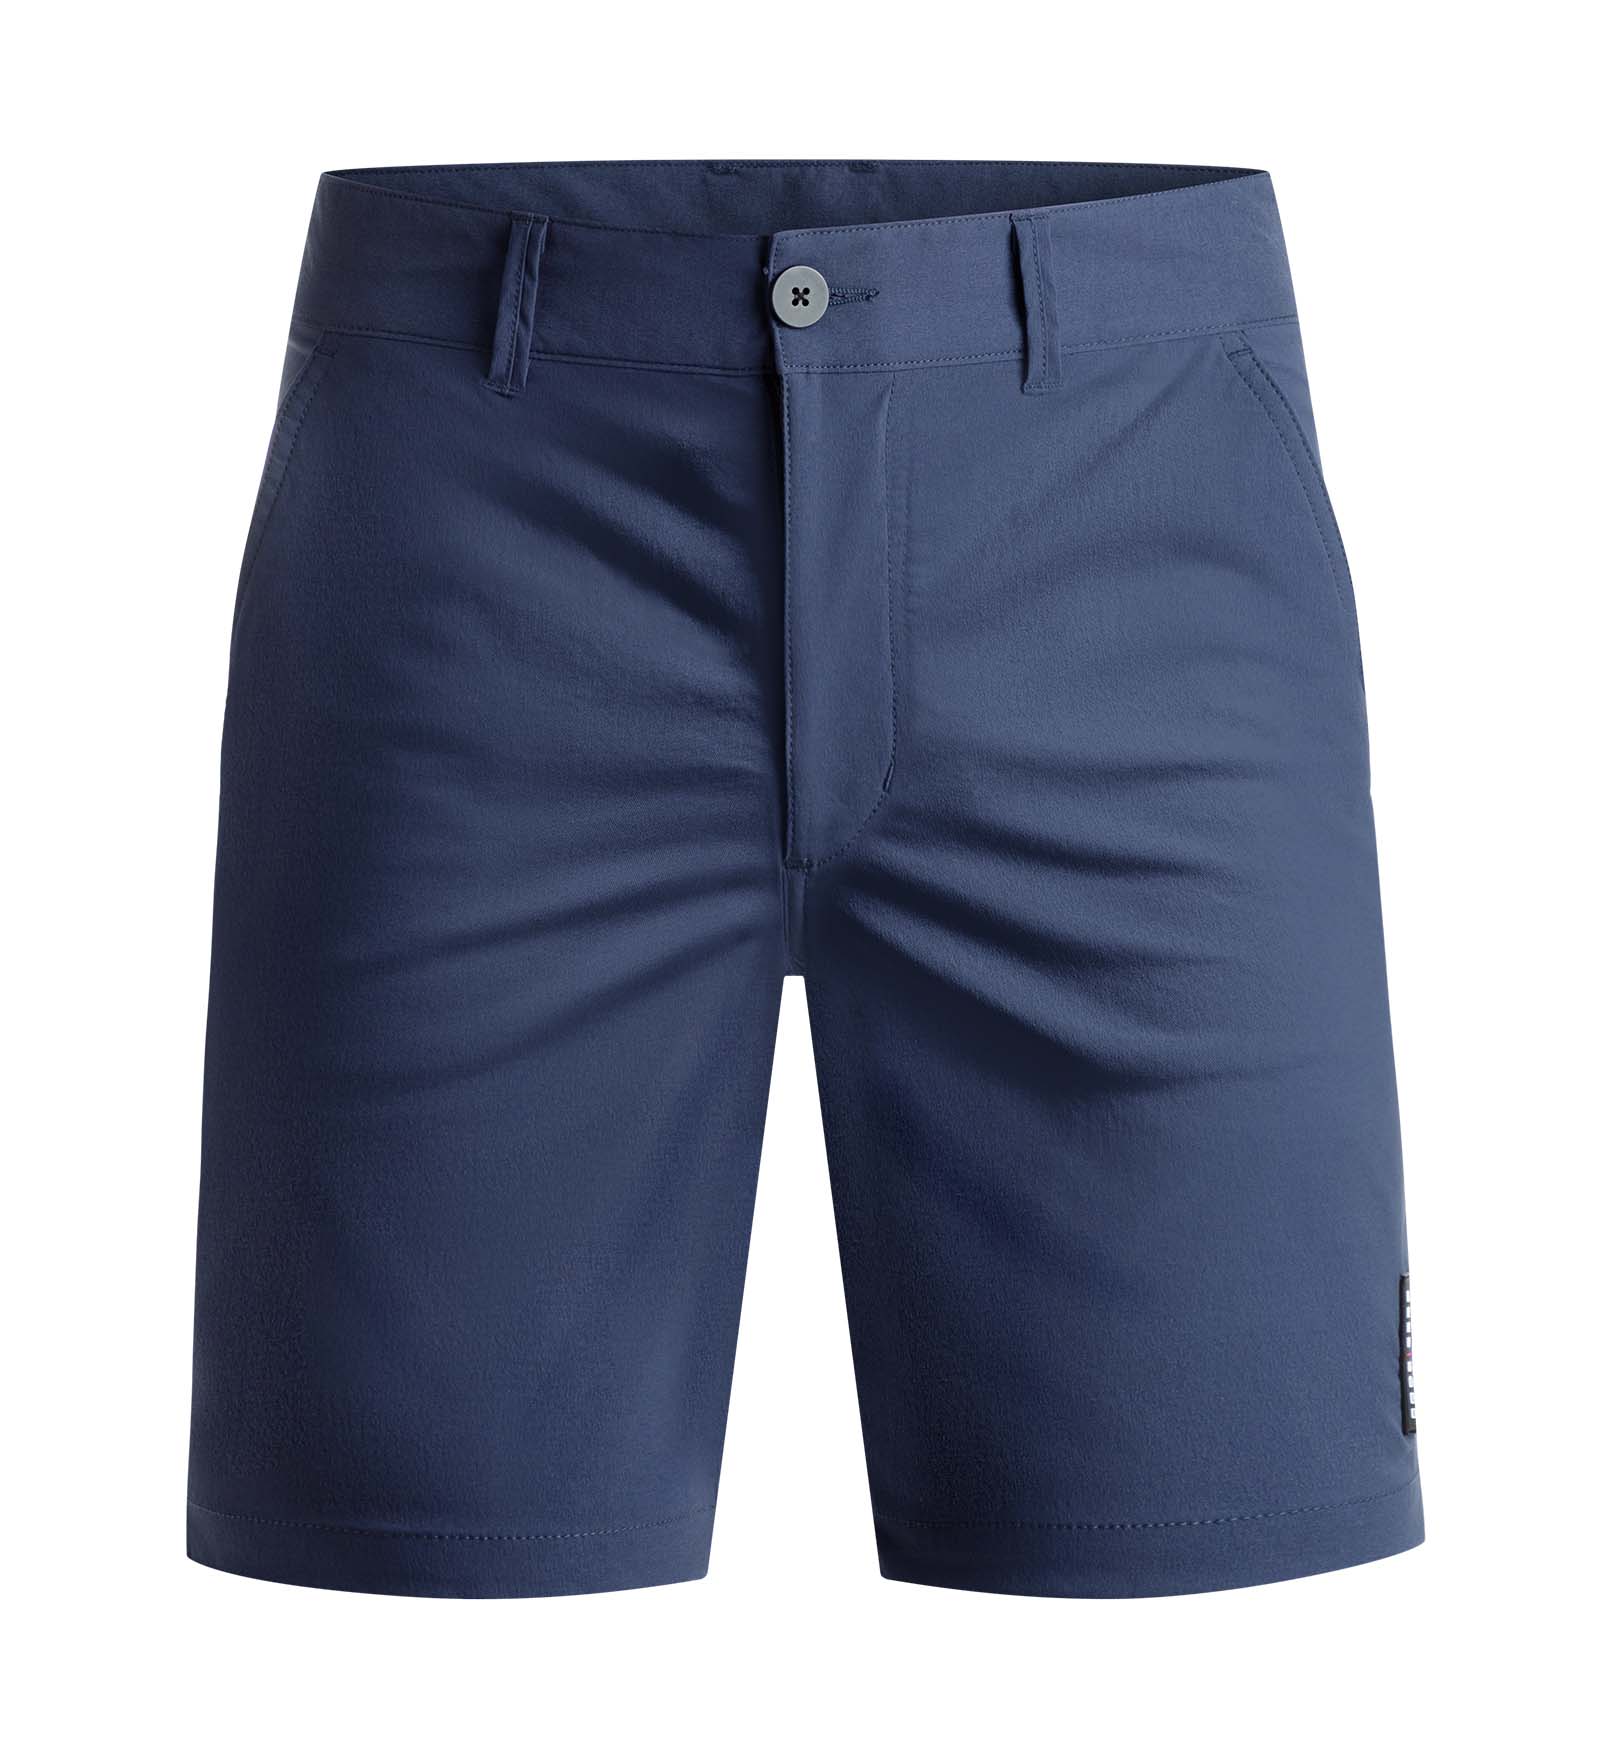 club-shorts-navy-functional_1920x1920